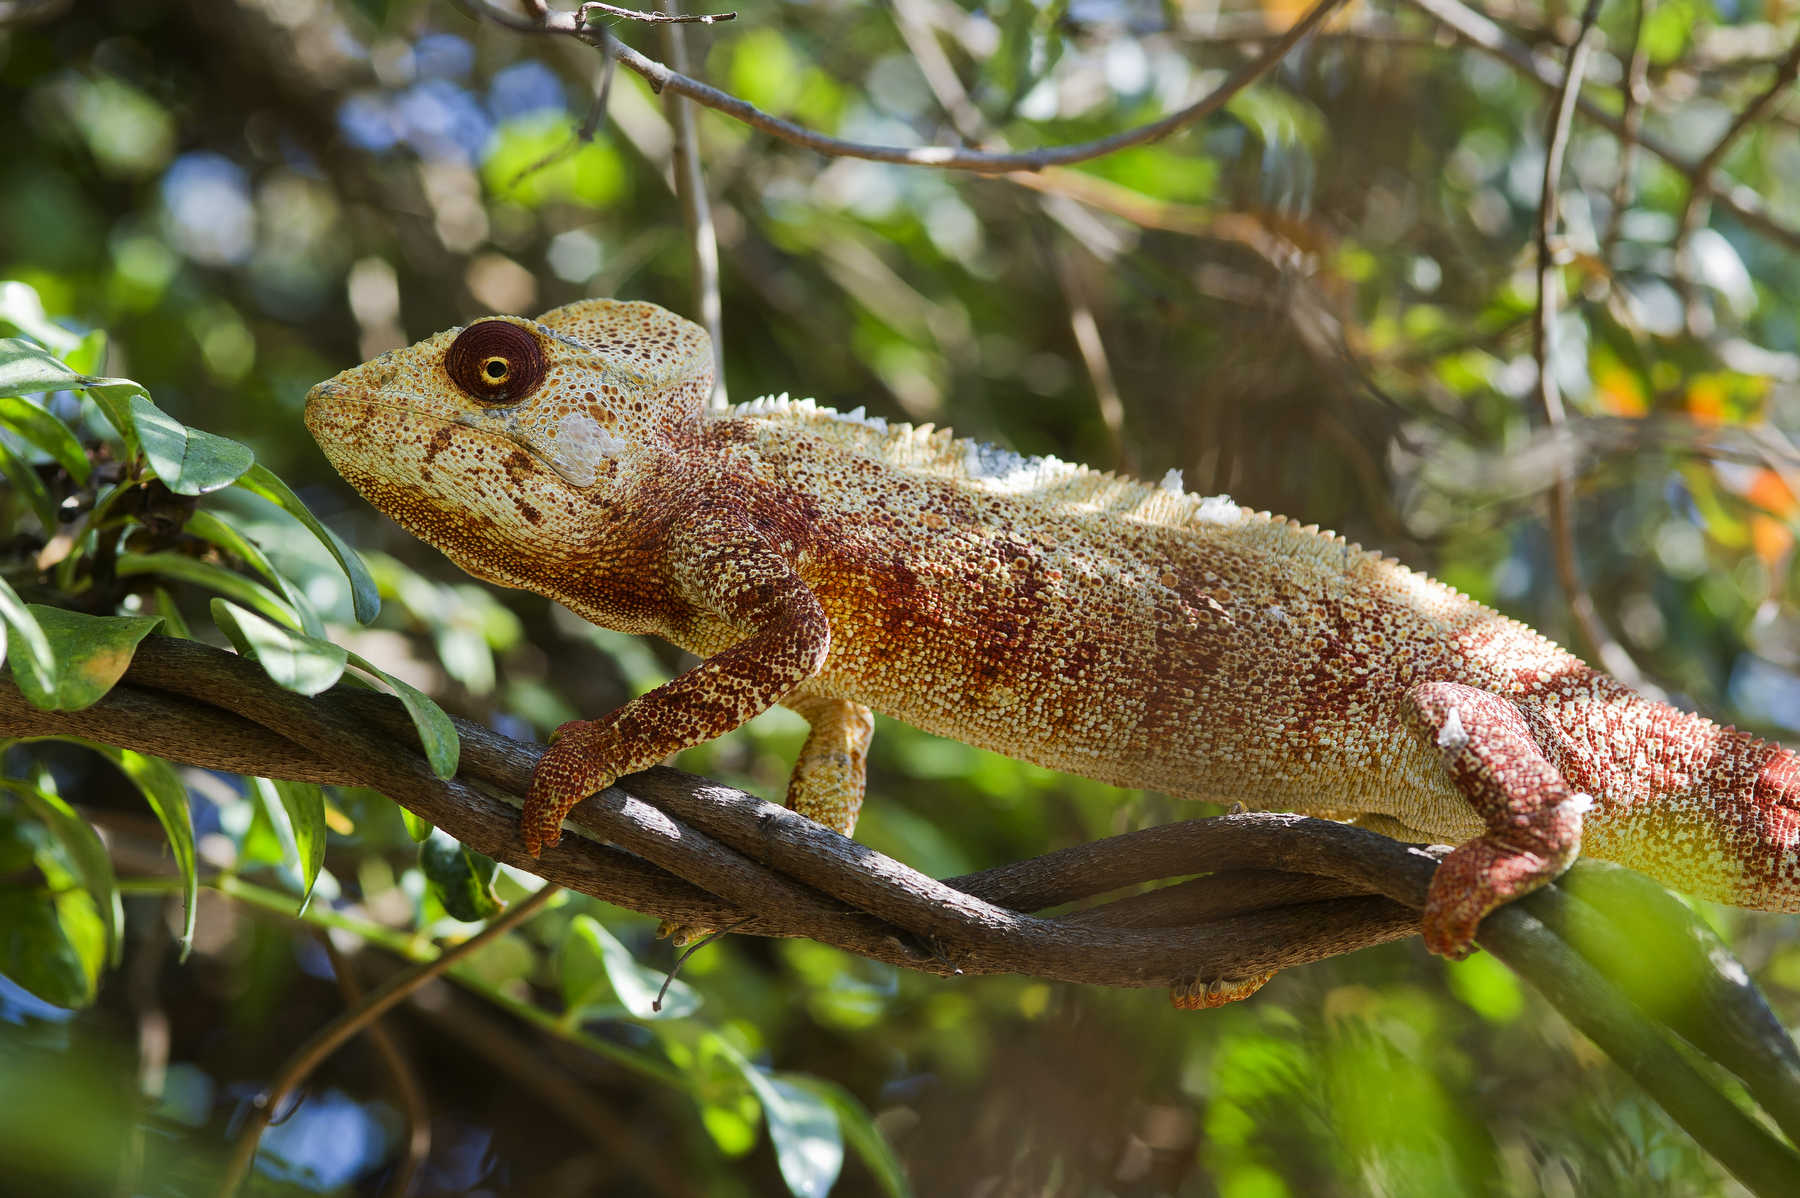 Couleur caméléon à Madagascar